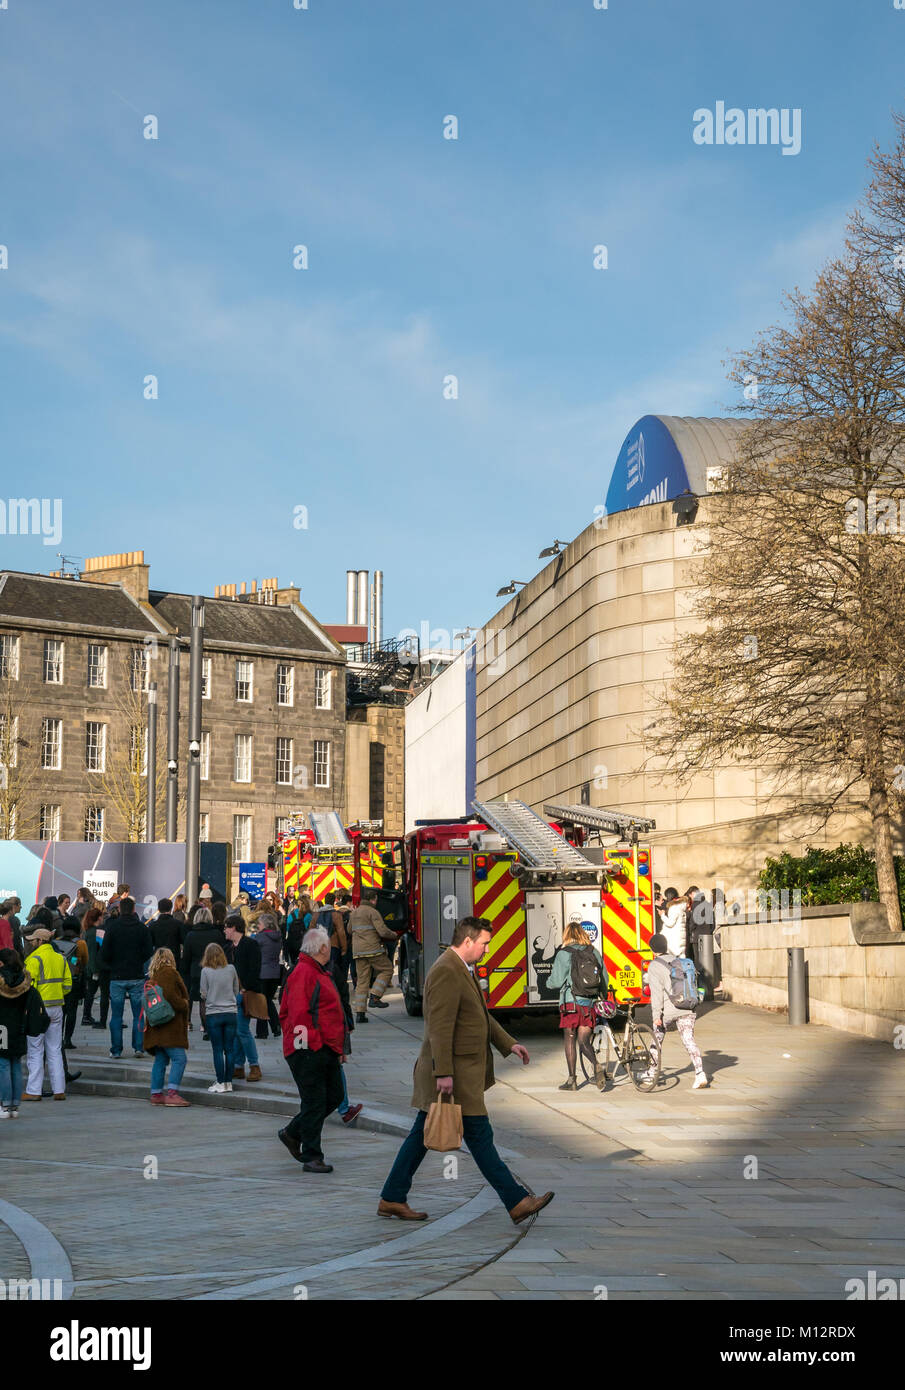 Los motores de incendios que asisten a la falsa alarma llaman a la Universidad Potterow de la Asociación de estudiantes de Edimburgo, Bristo Square, Edimburgo, Escocia, Reino Unido Foto de stock